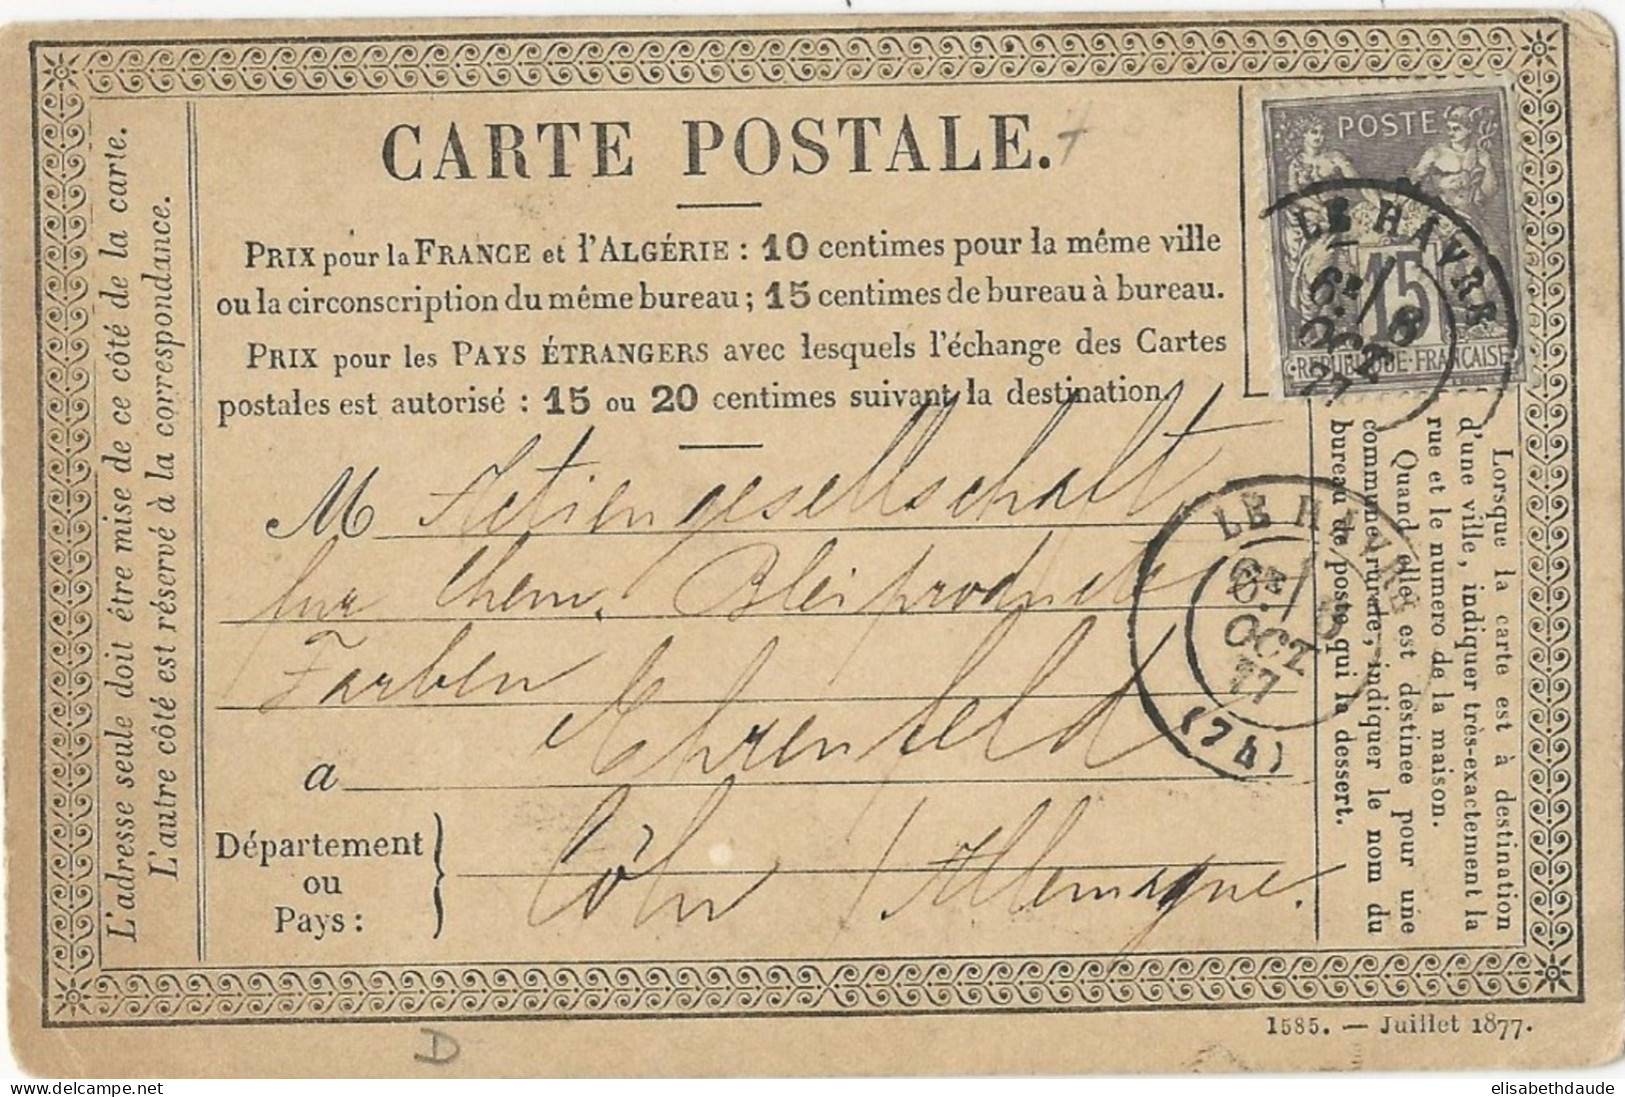 SEINE INFERIEURE - 1877 - CP PRECURSEUR ENTIER SAGE REPIQUAGE PRIVE TRANSPORT MARITIME MOHR à LE HAVRE => ALLEMAGNE !! - Precursor Cards